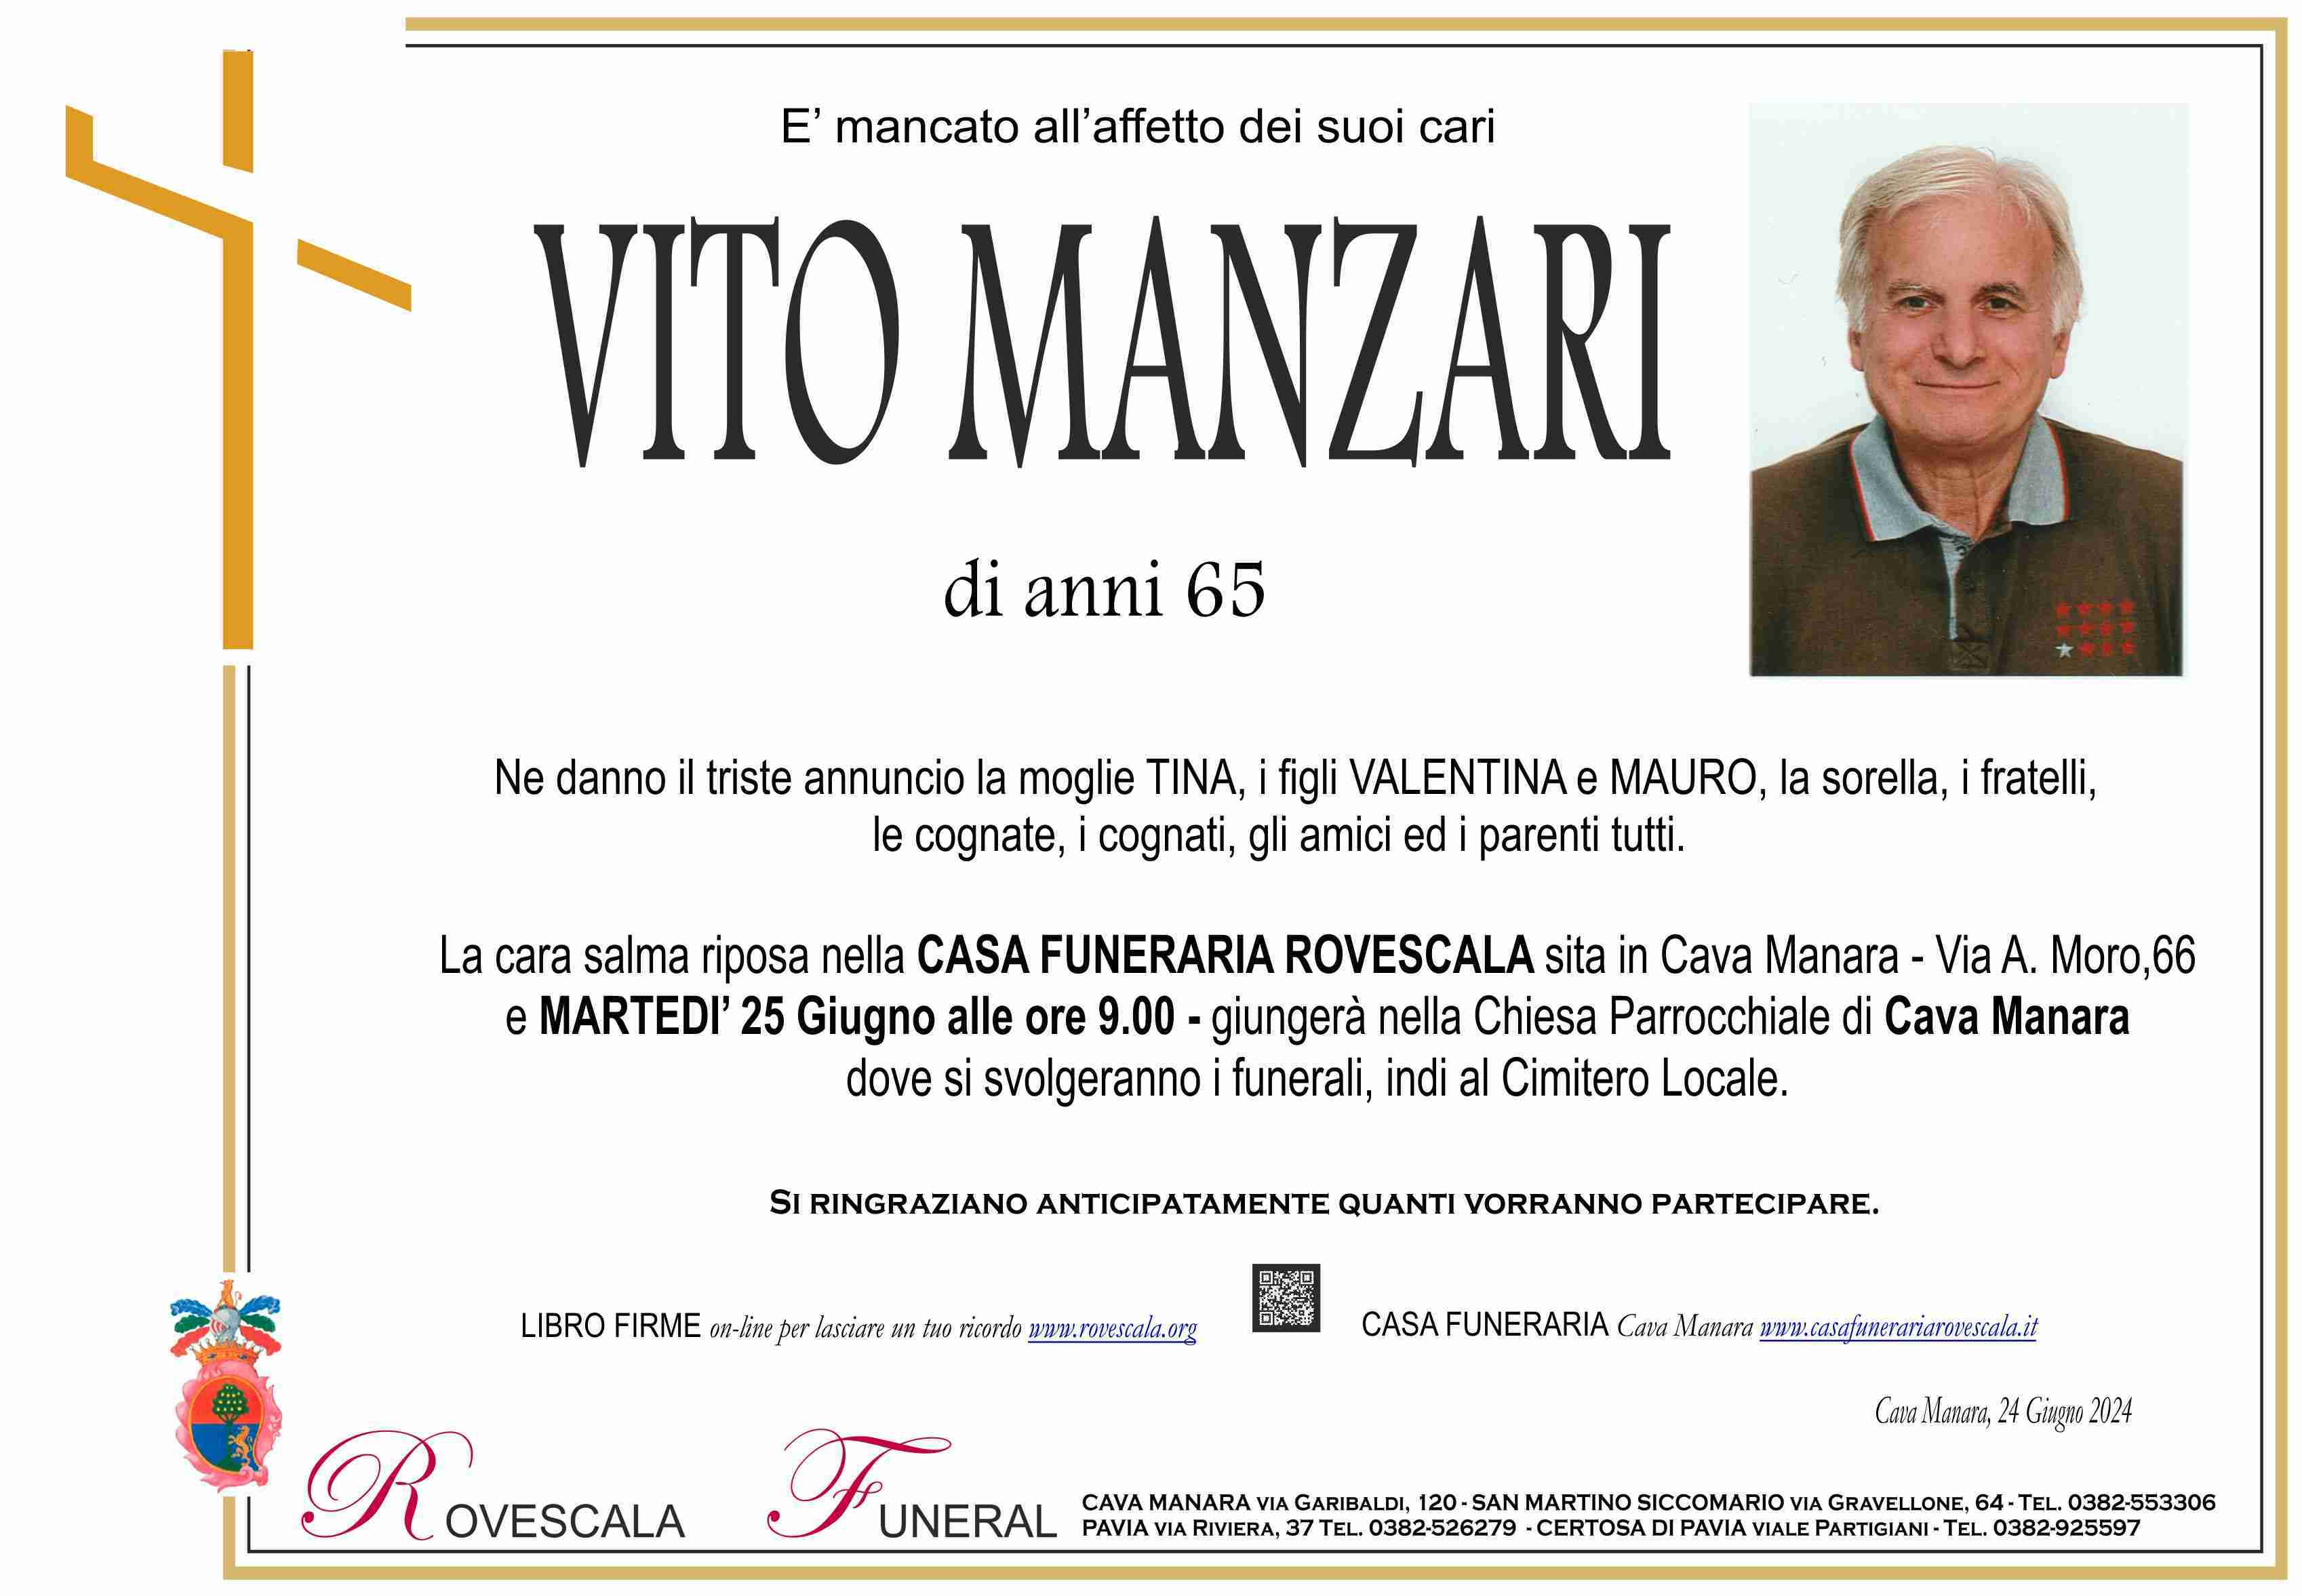 Vito Manzari